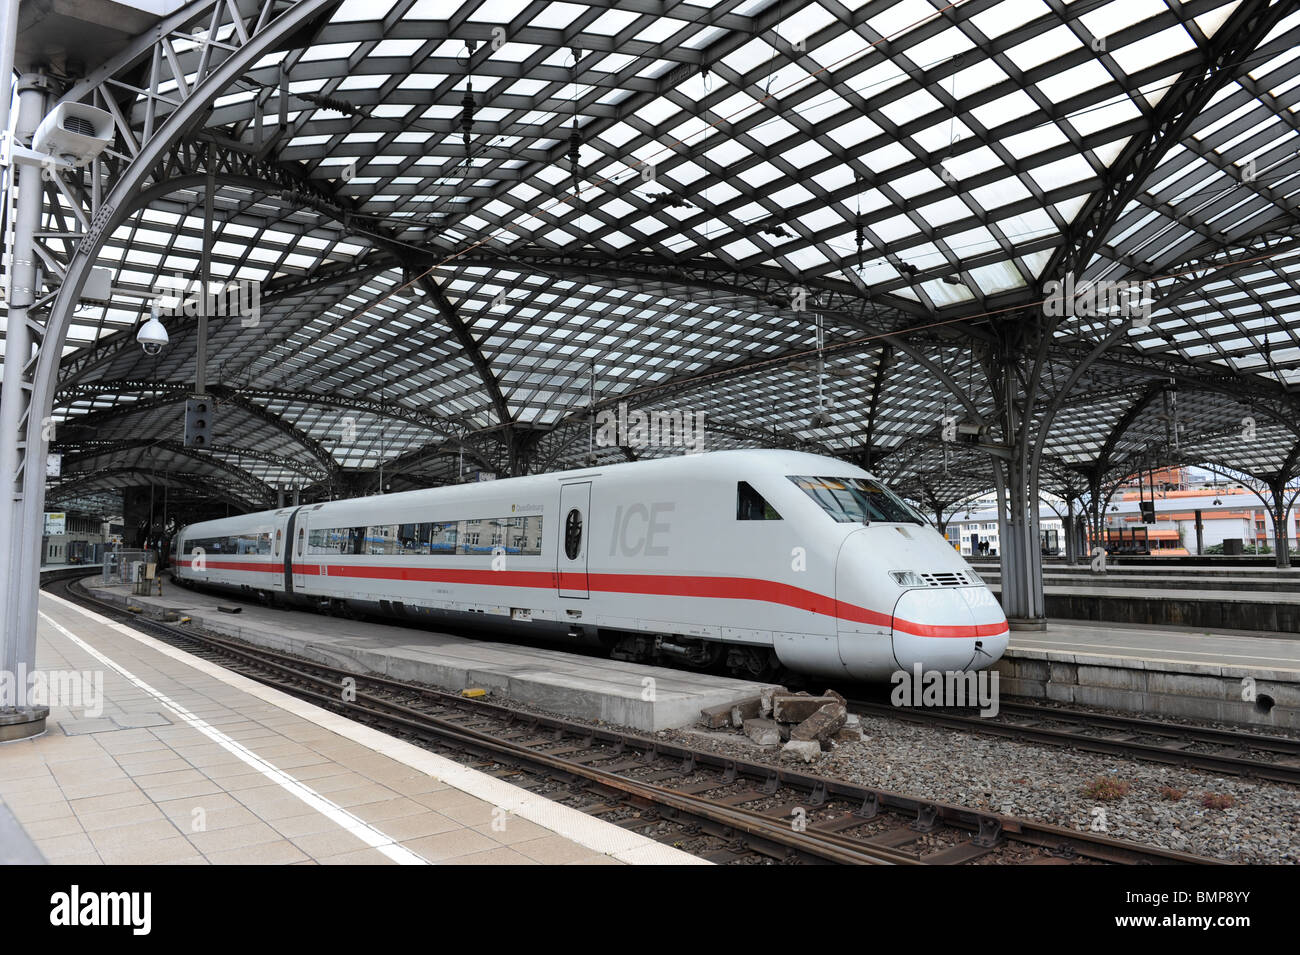 Cologne Koln railway station Germany Deutschland Europe with Deutsche Bahn DB ICE train Stock Photo